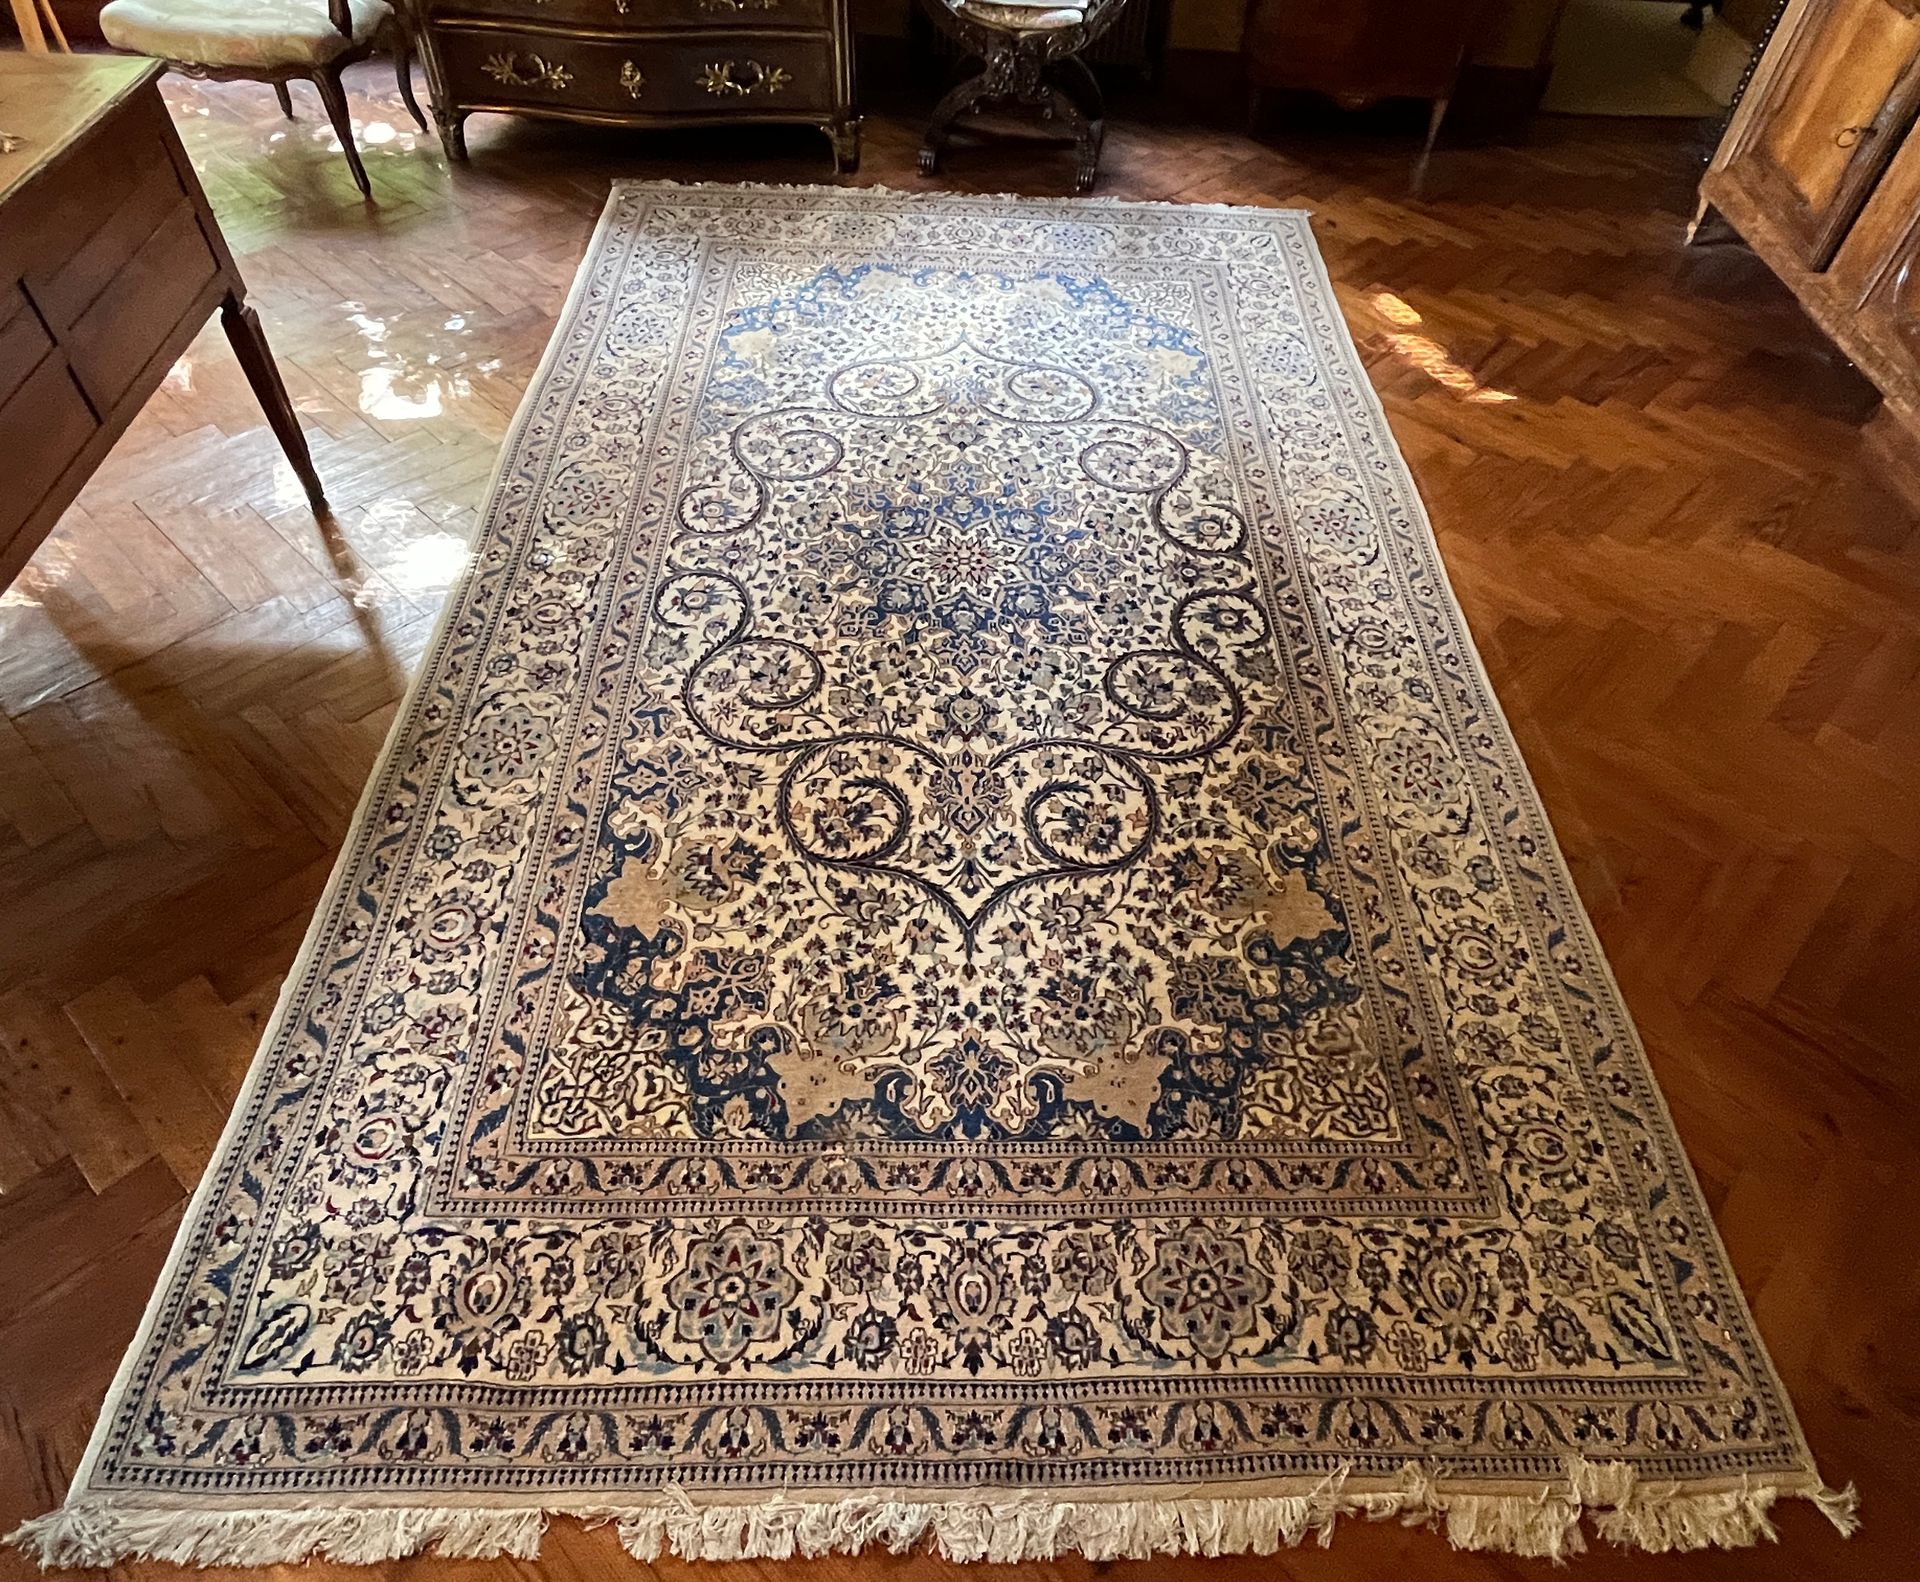 Null 84. 大型波斯地毯，MELAHIR

羊毛和丝绸

边框上装饰有卷轴和盛开的荷花

尺寸：337 x 200厘米。